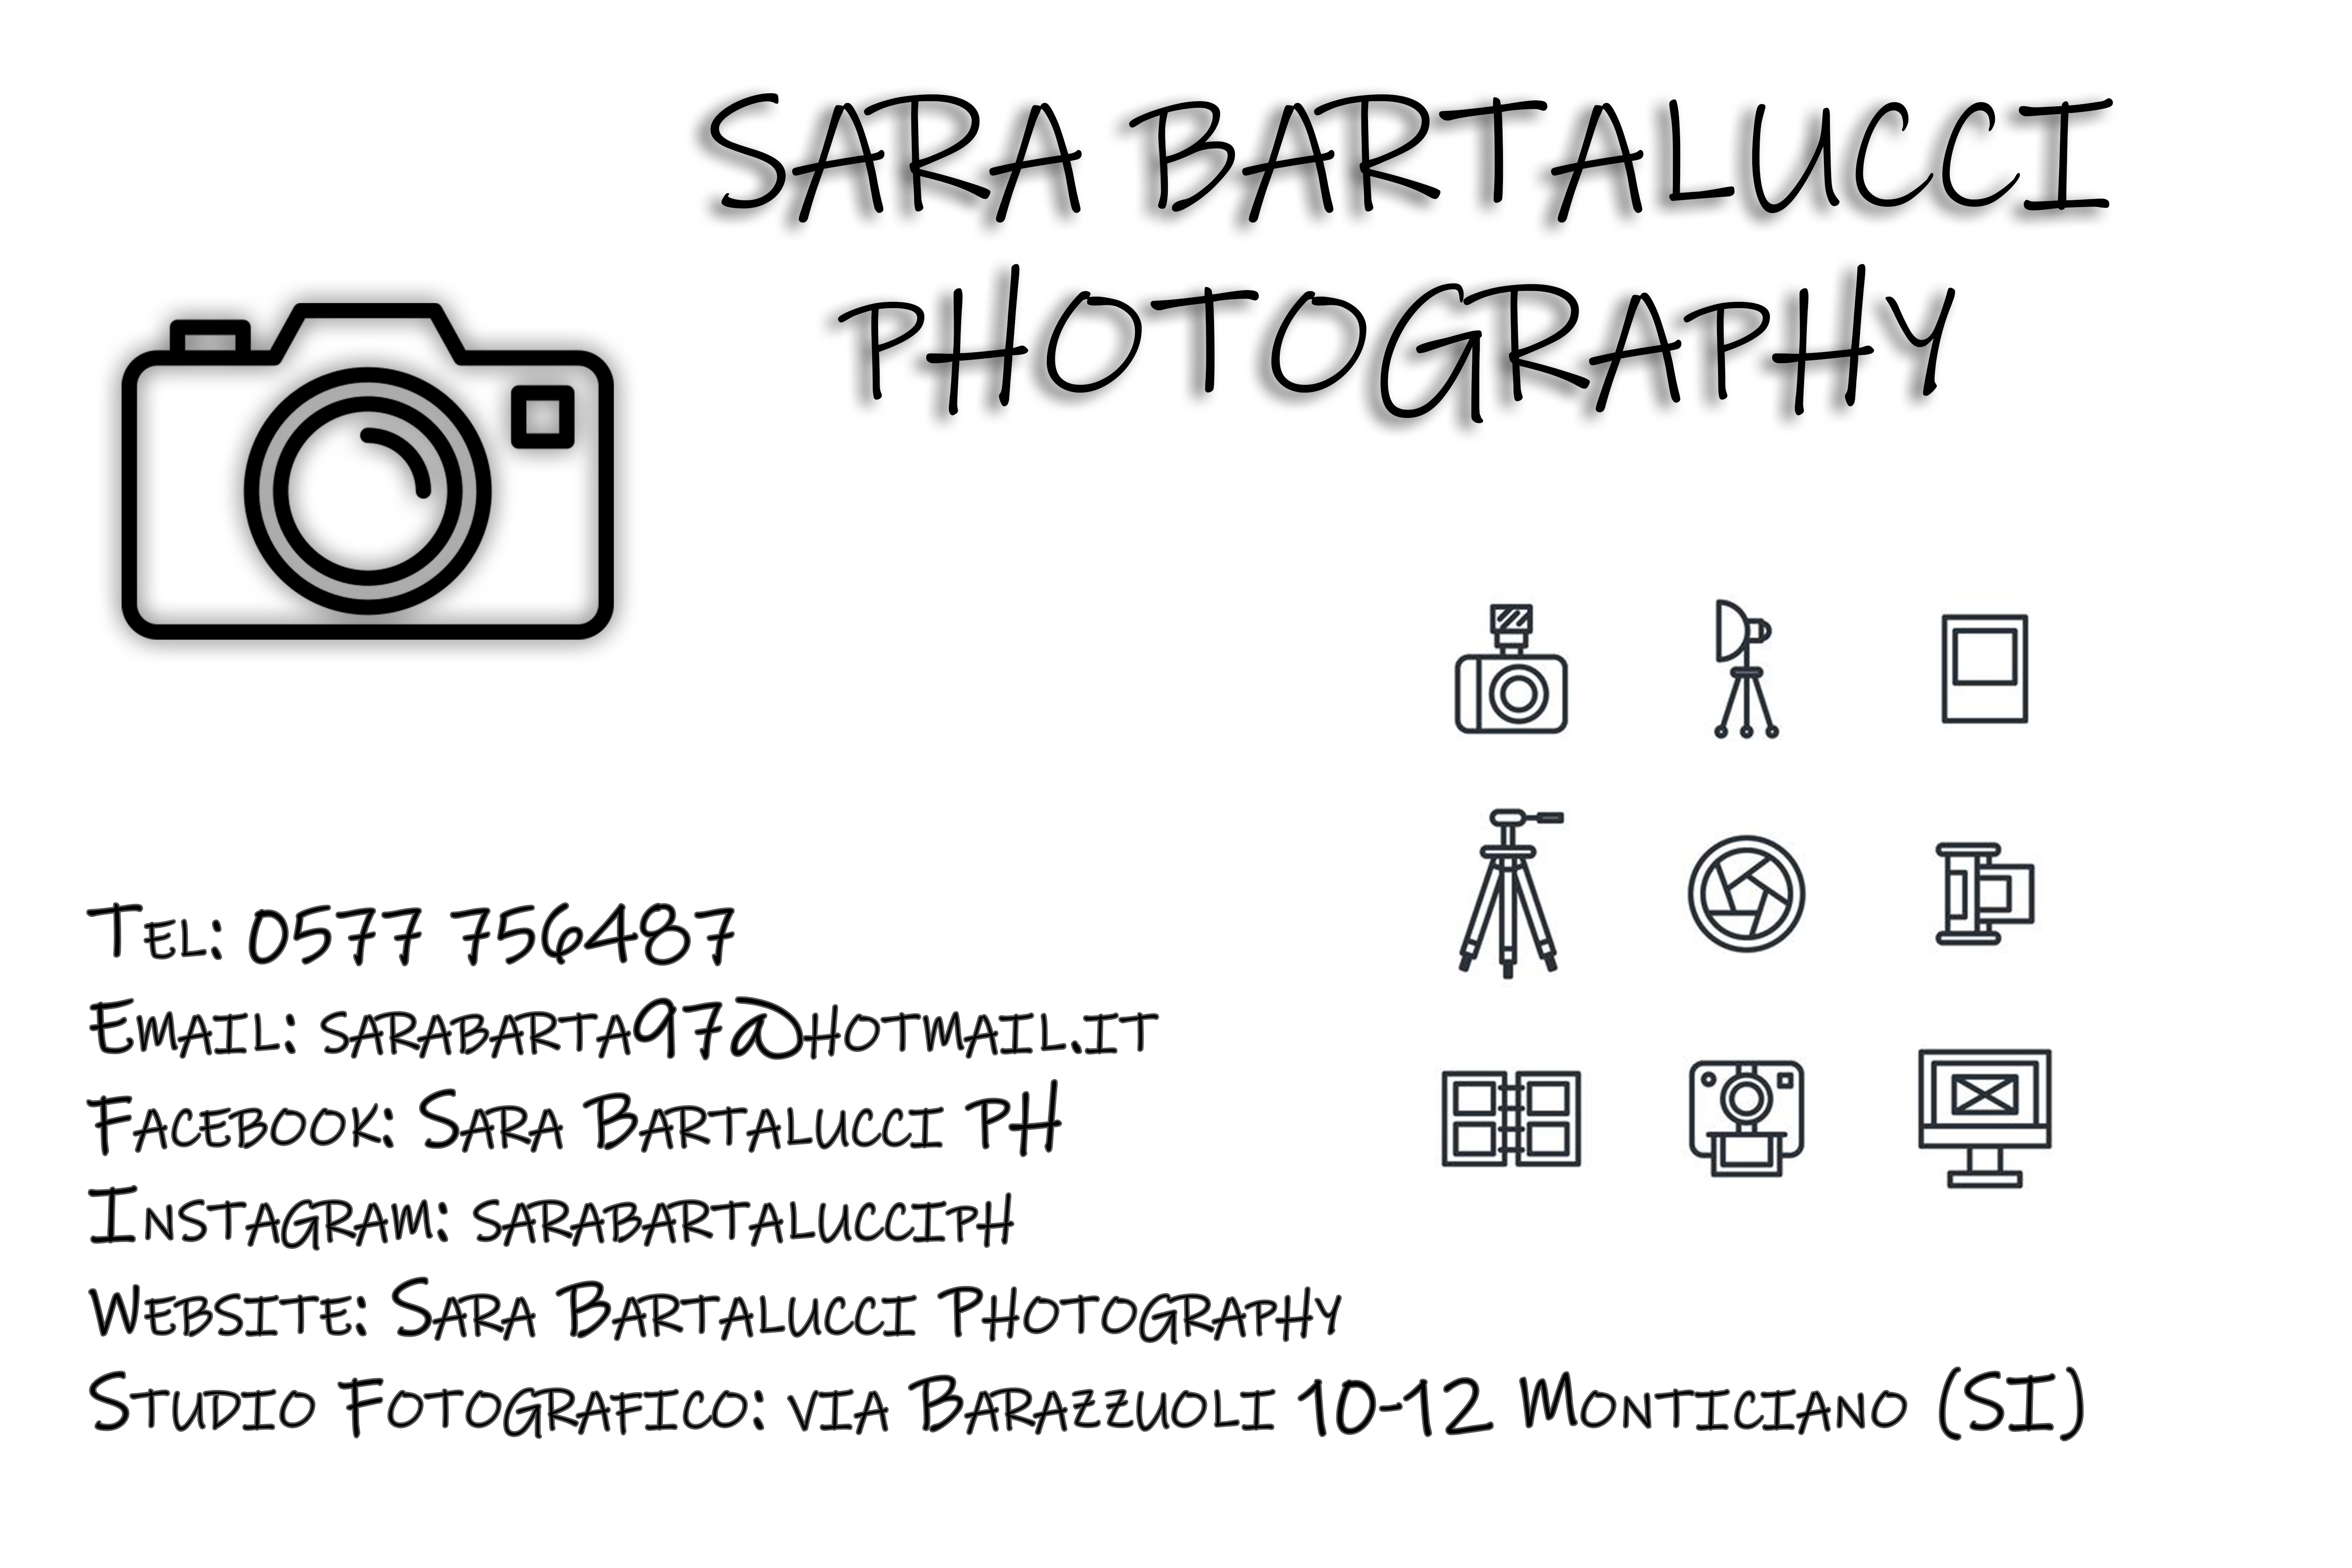 SARA BARTALUCCI PHOTOGRAPHY